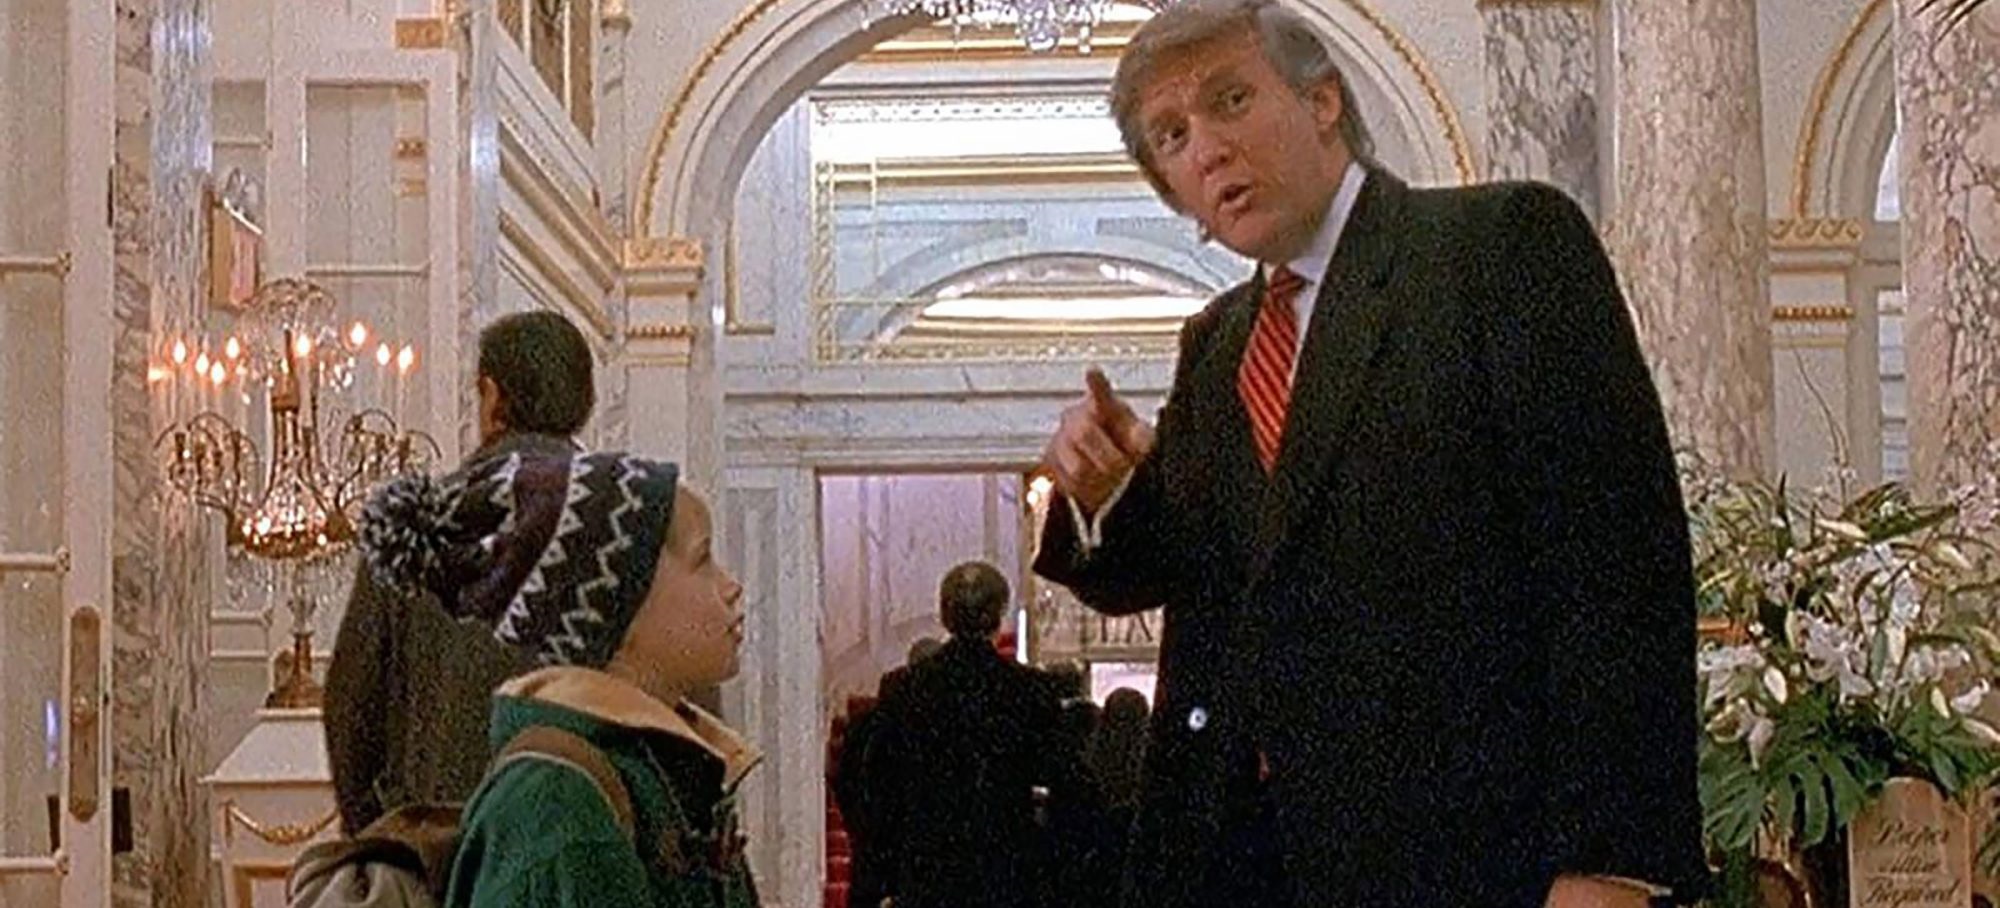 Macaulay Culkin se suma a popular petición de remover a Donald Trump de "Mi pobre angelito 2"